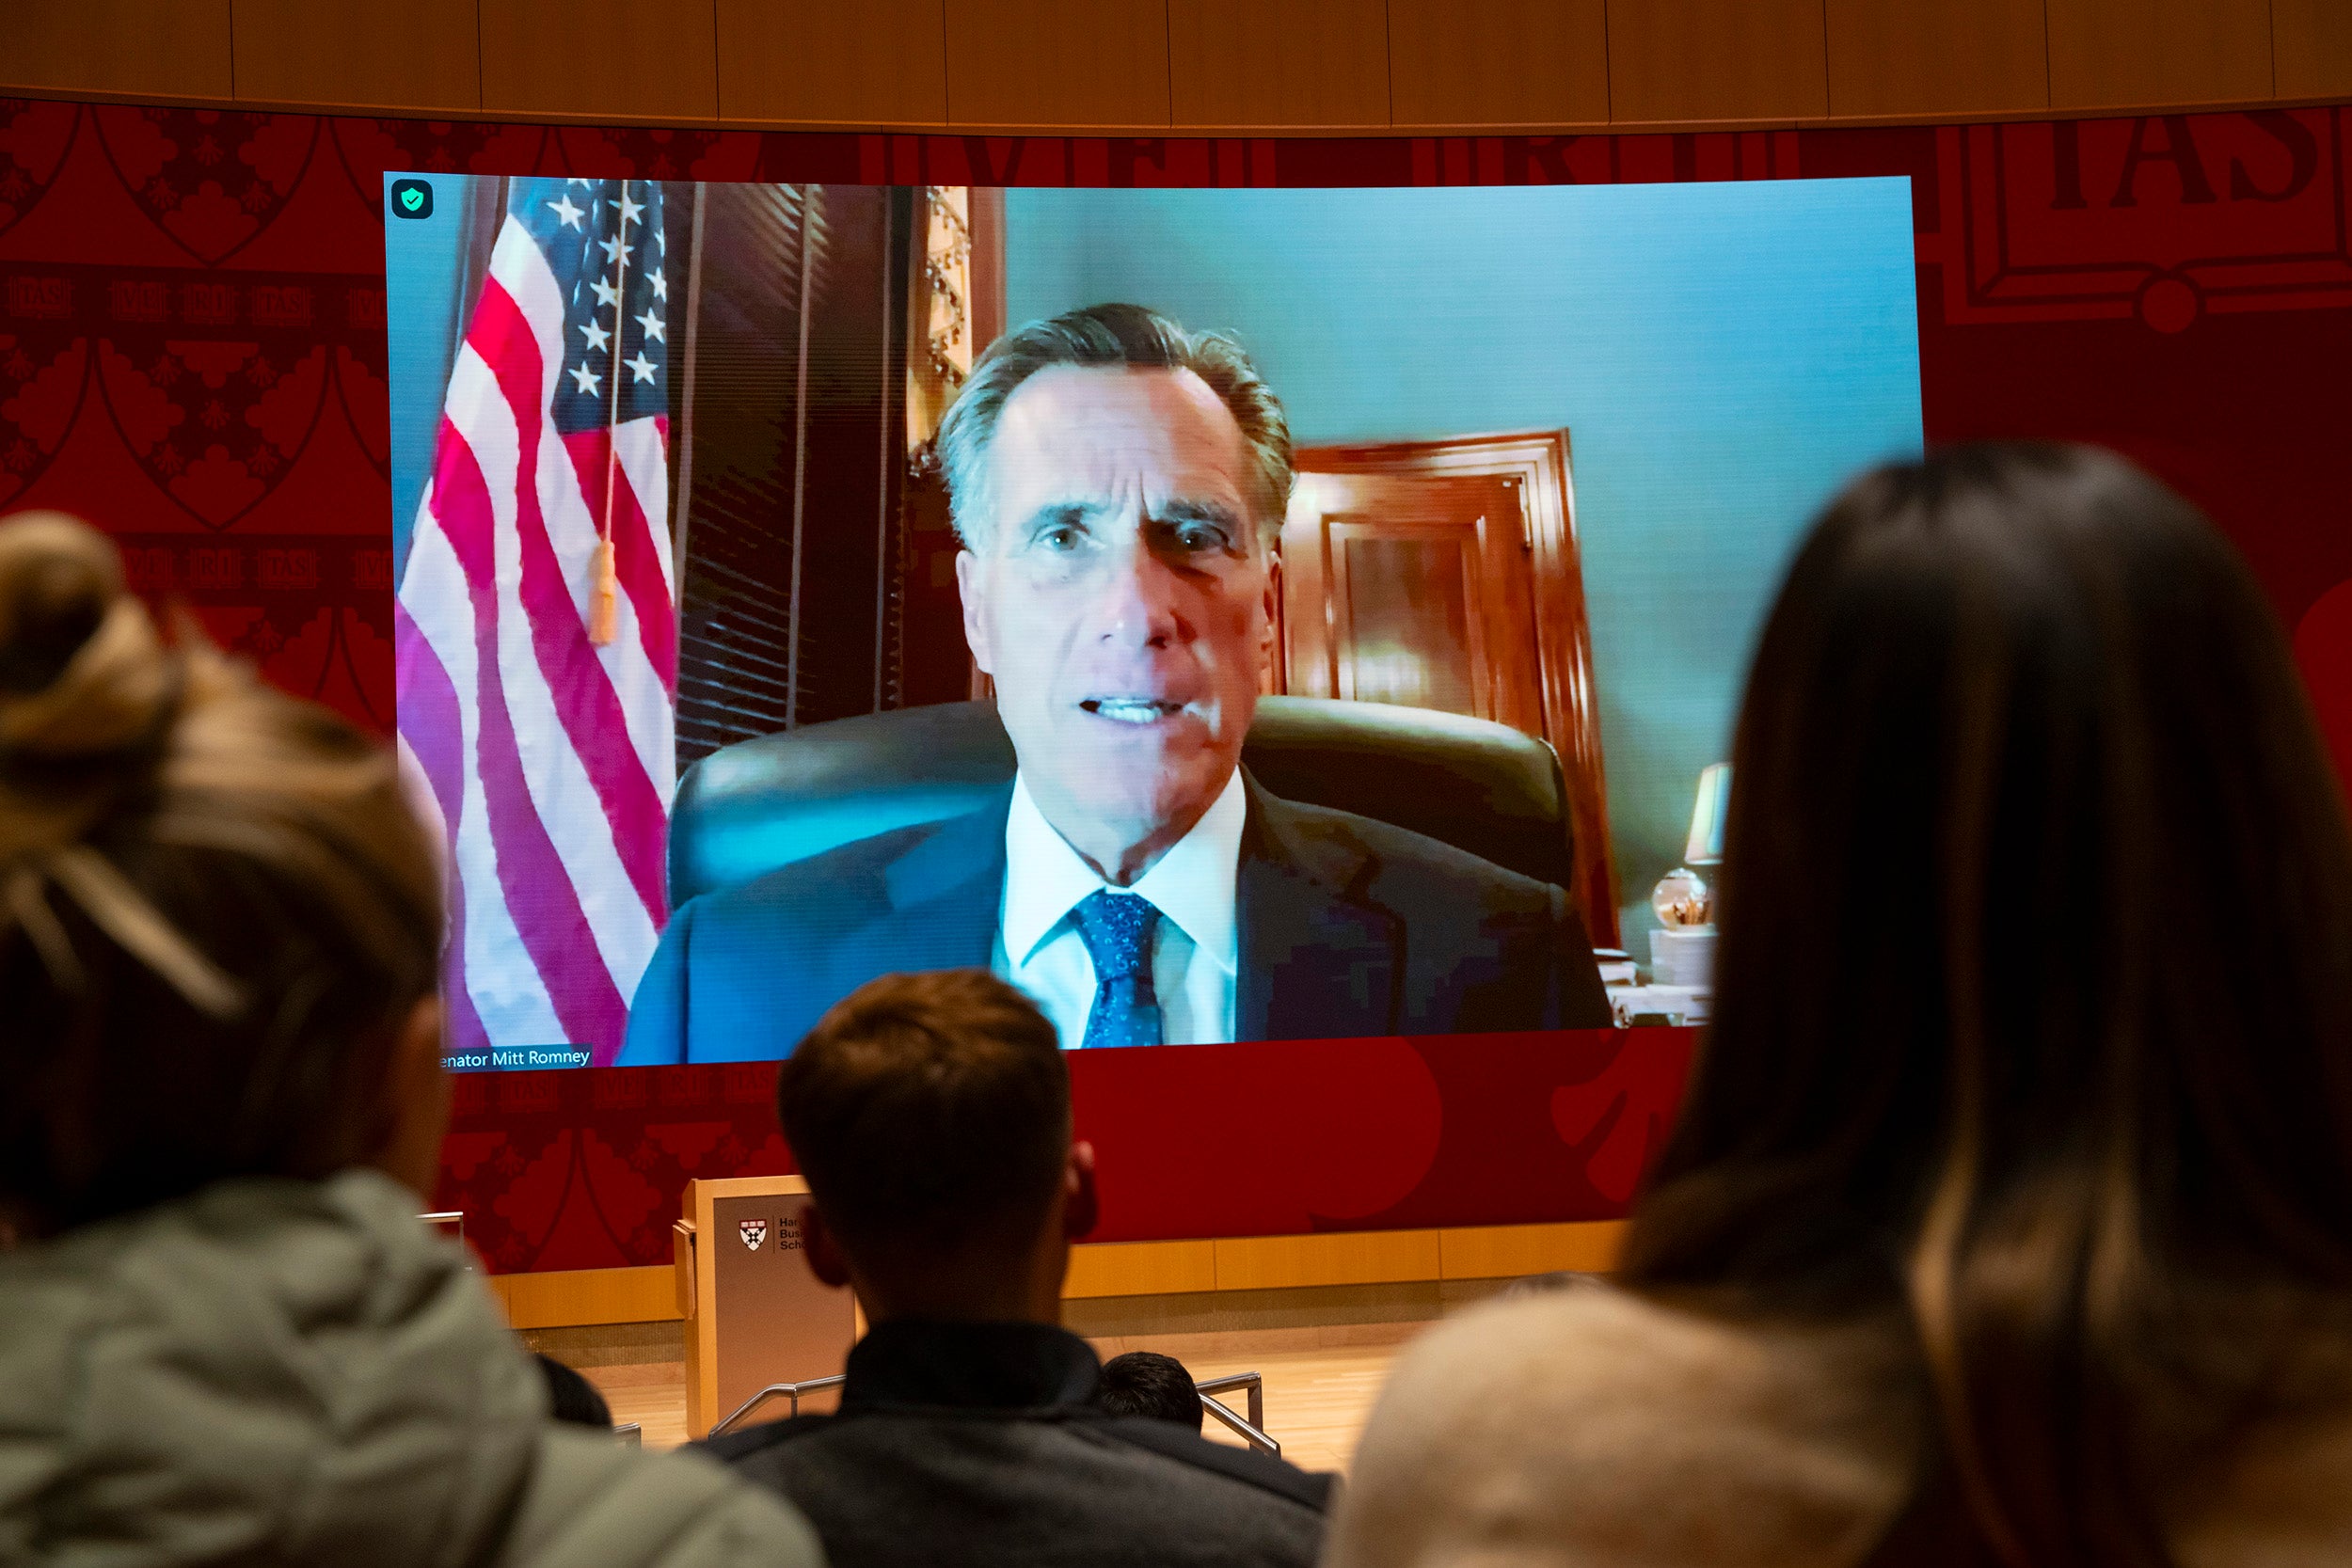 Mitt Romney speak via Zoom at HBS.